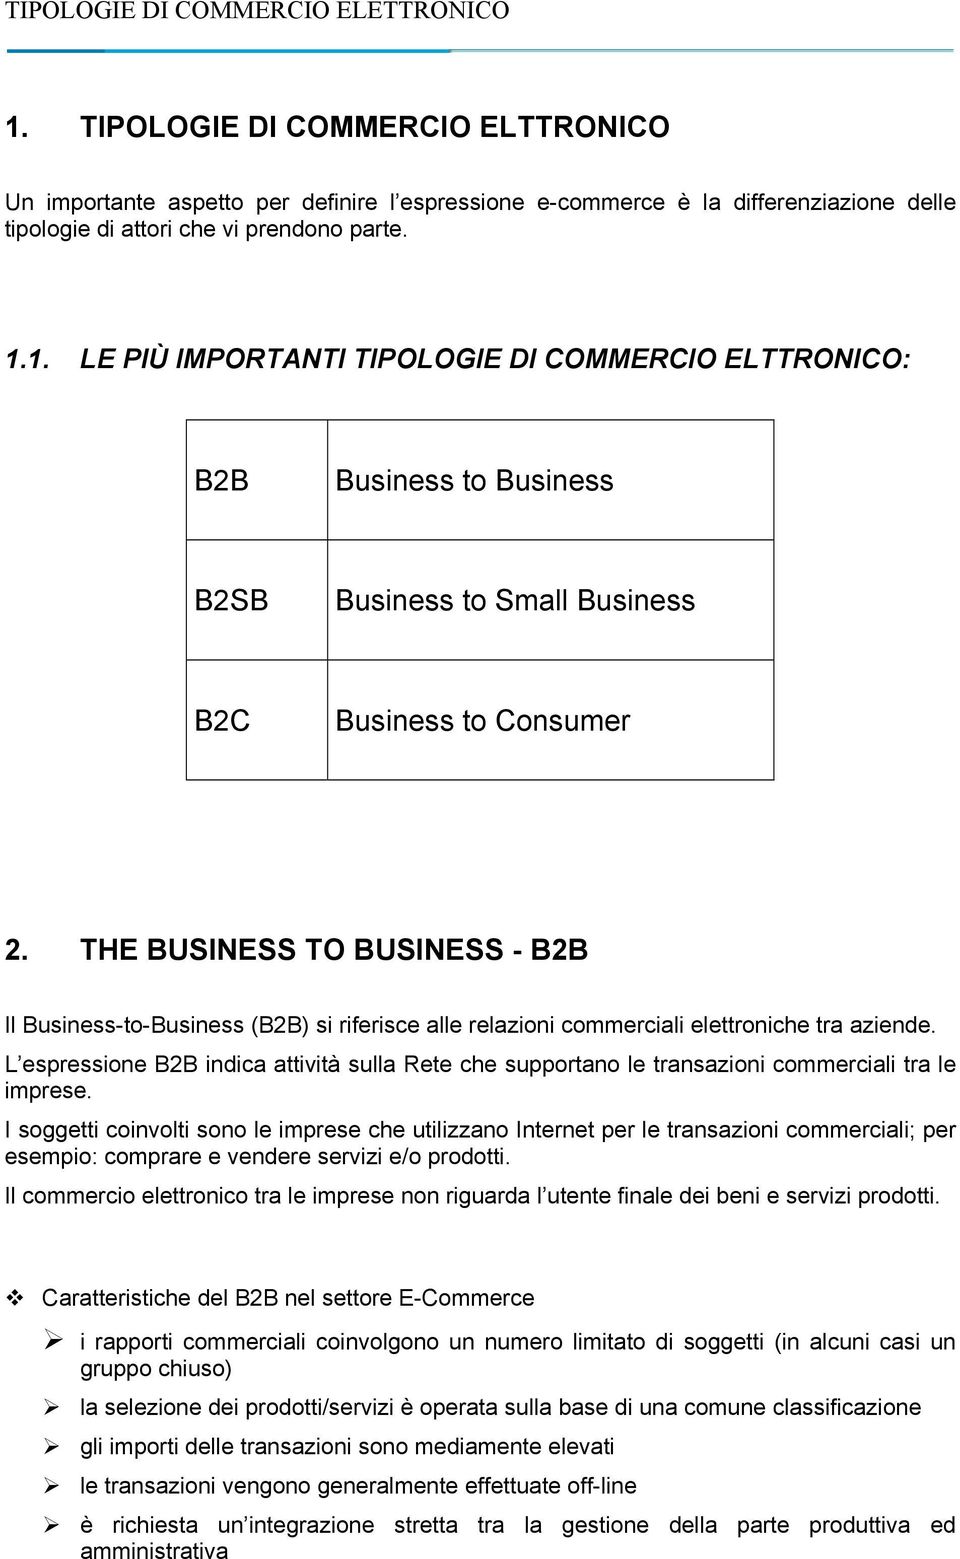 L espressione B2B indica attività sulla Rete che supportano le transazioni commerciali tra le imprese.